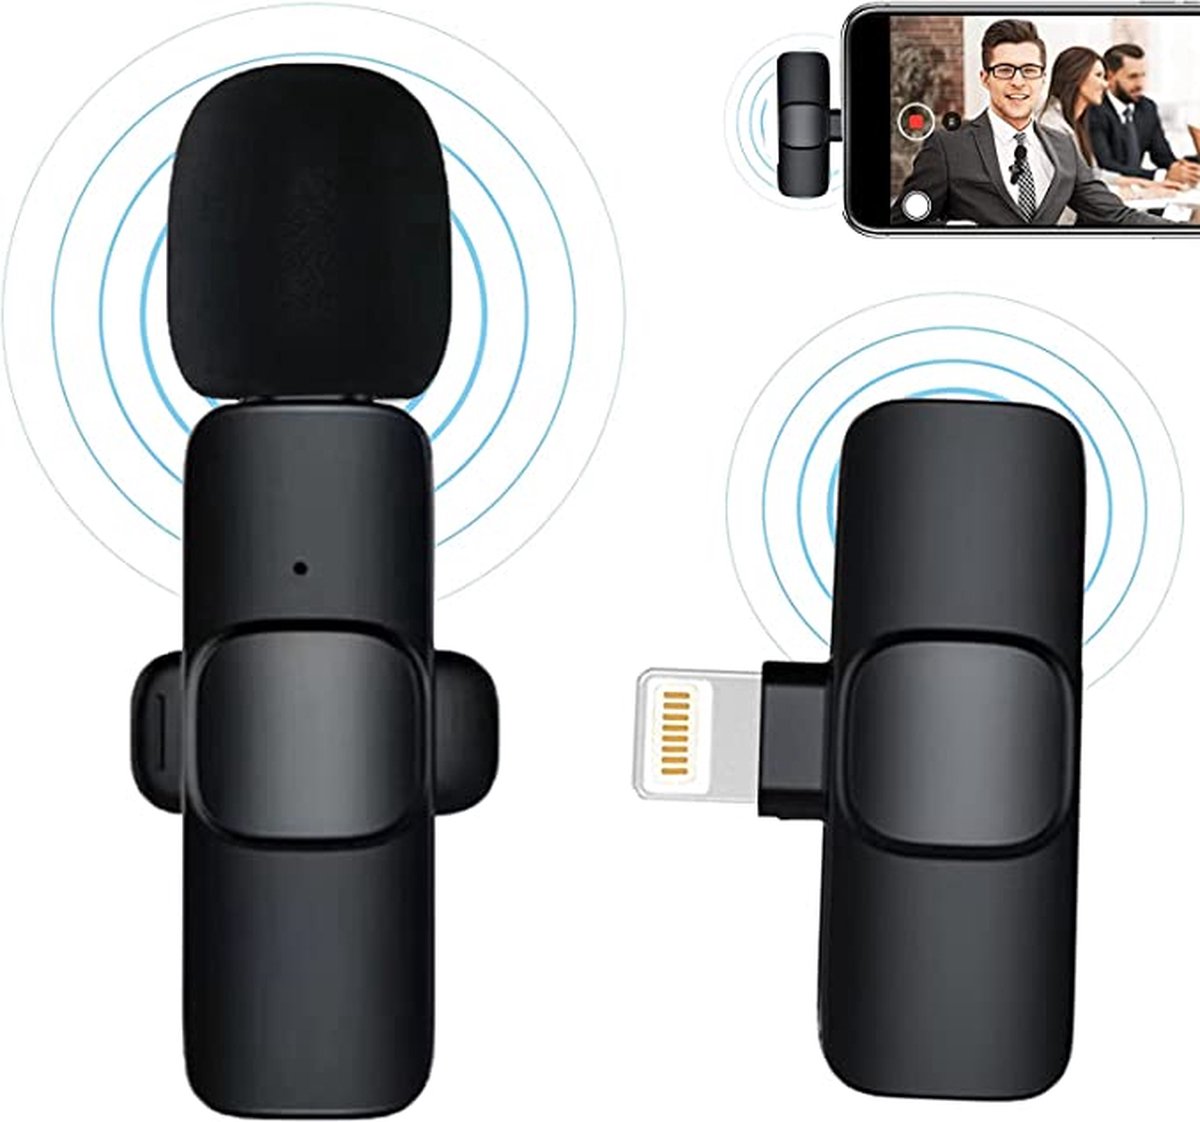 Draadloze Microfoon - Tiktok - Lavalier Microfoon - Draadloze Microfoonset - USB C en Iphone